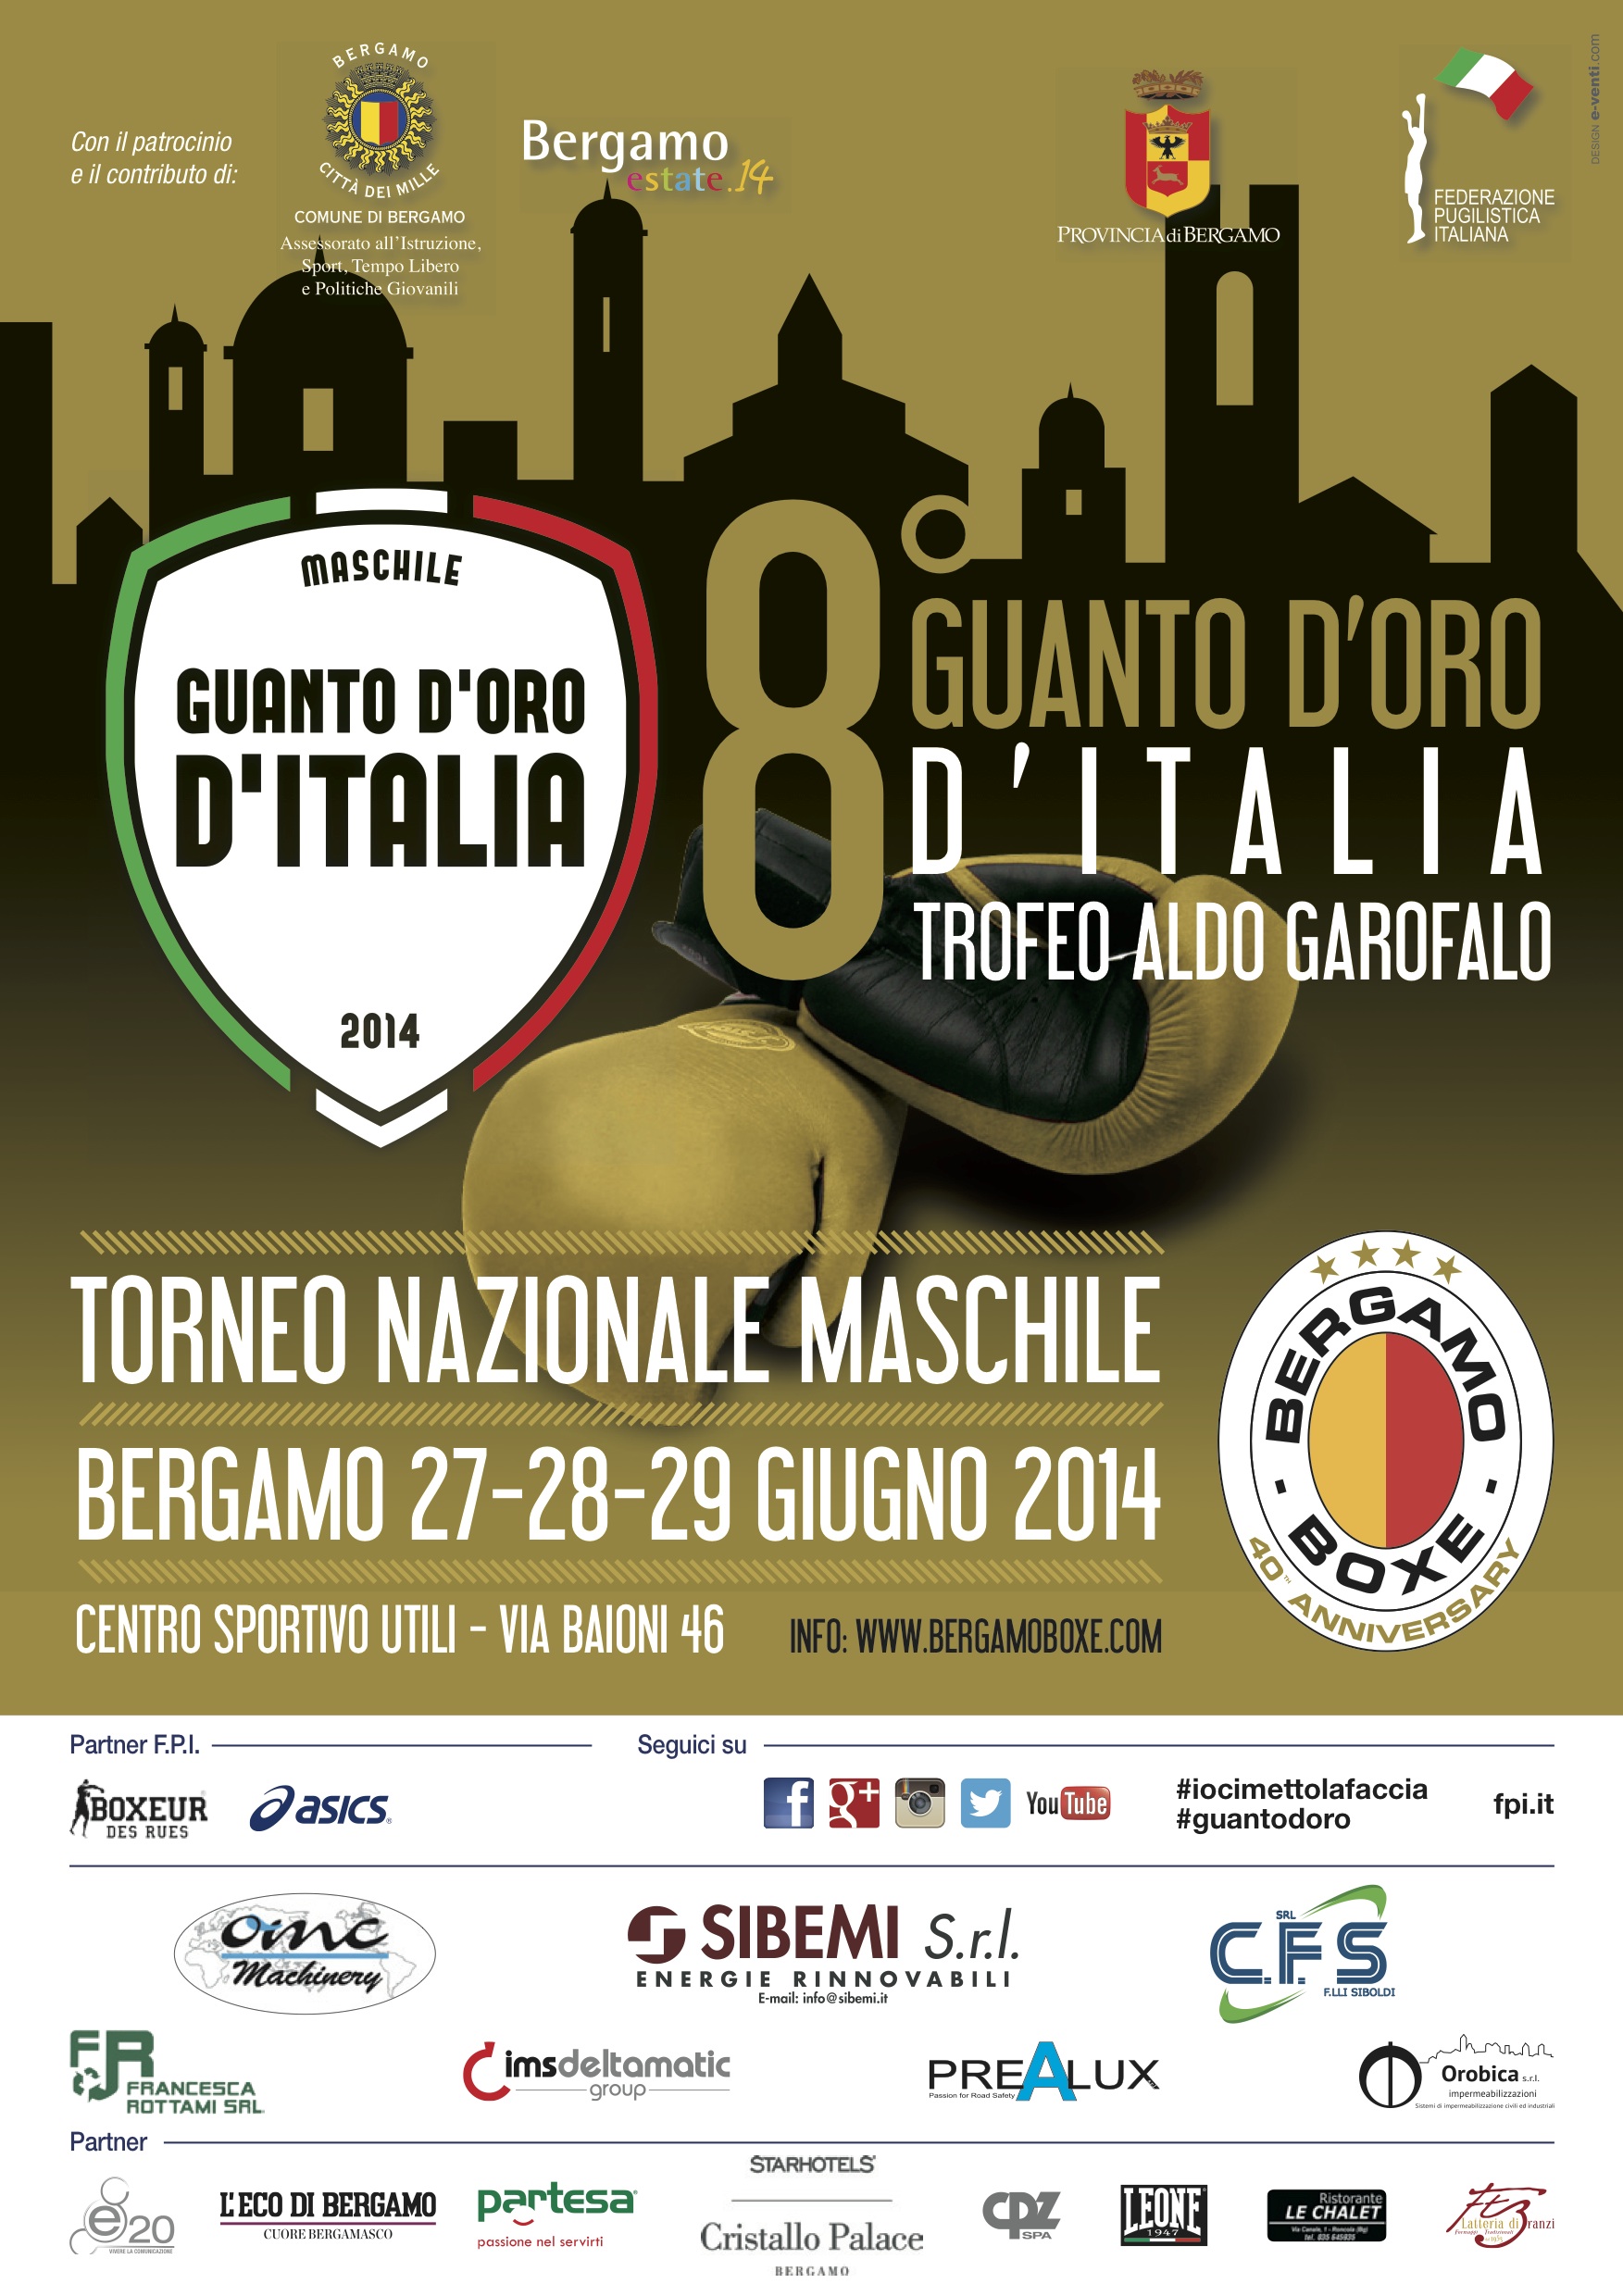 Guanto d'Oro D'Italia A. Garofalo Bergamo 2014: La locandina Ufficiale